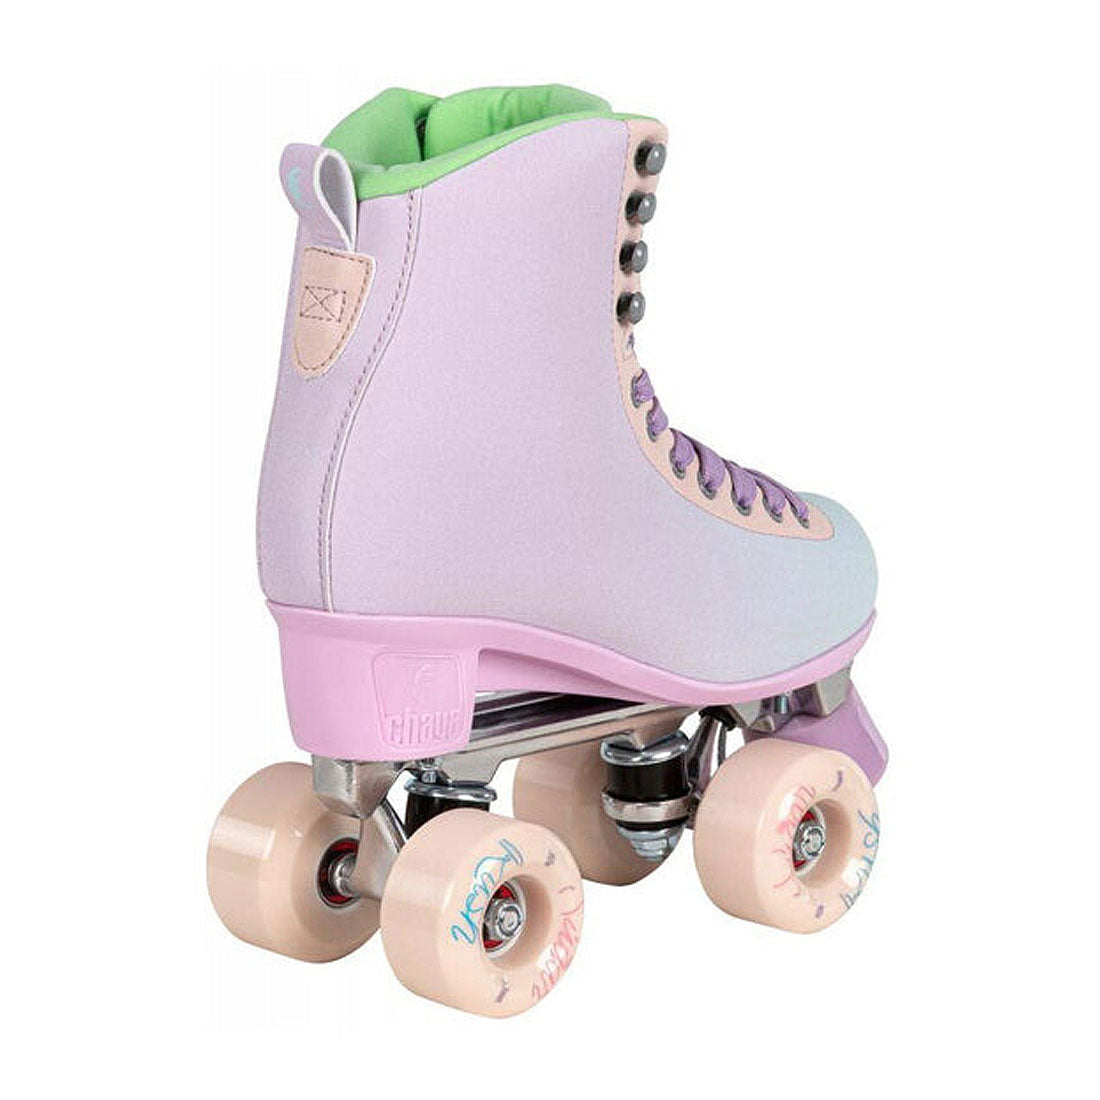 Chaya Melrose Deluxe Skate - Pastel Roller Skates